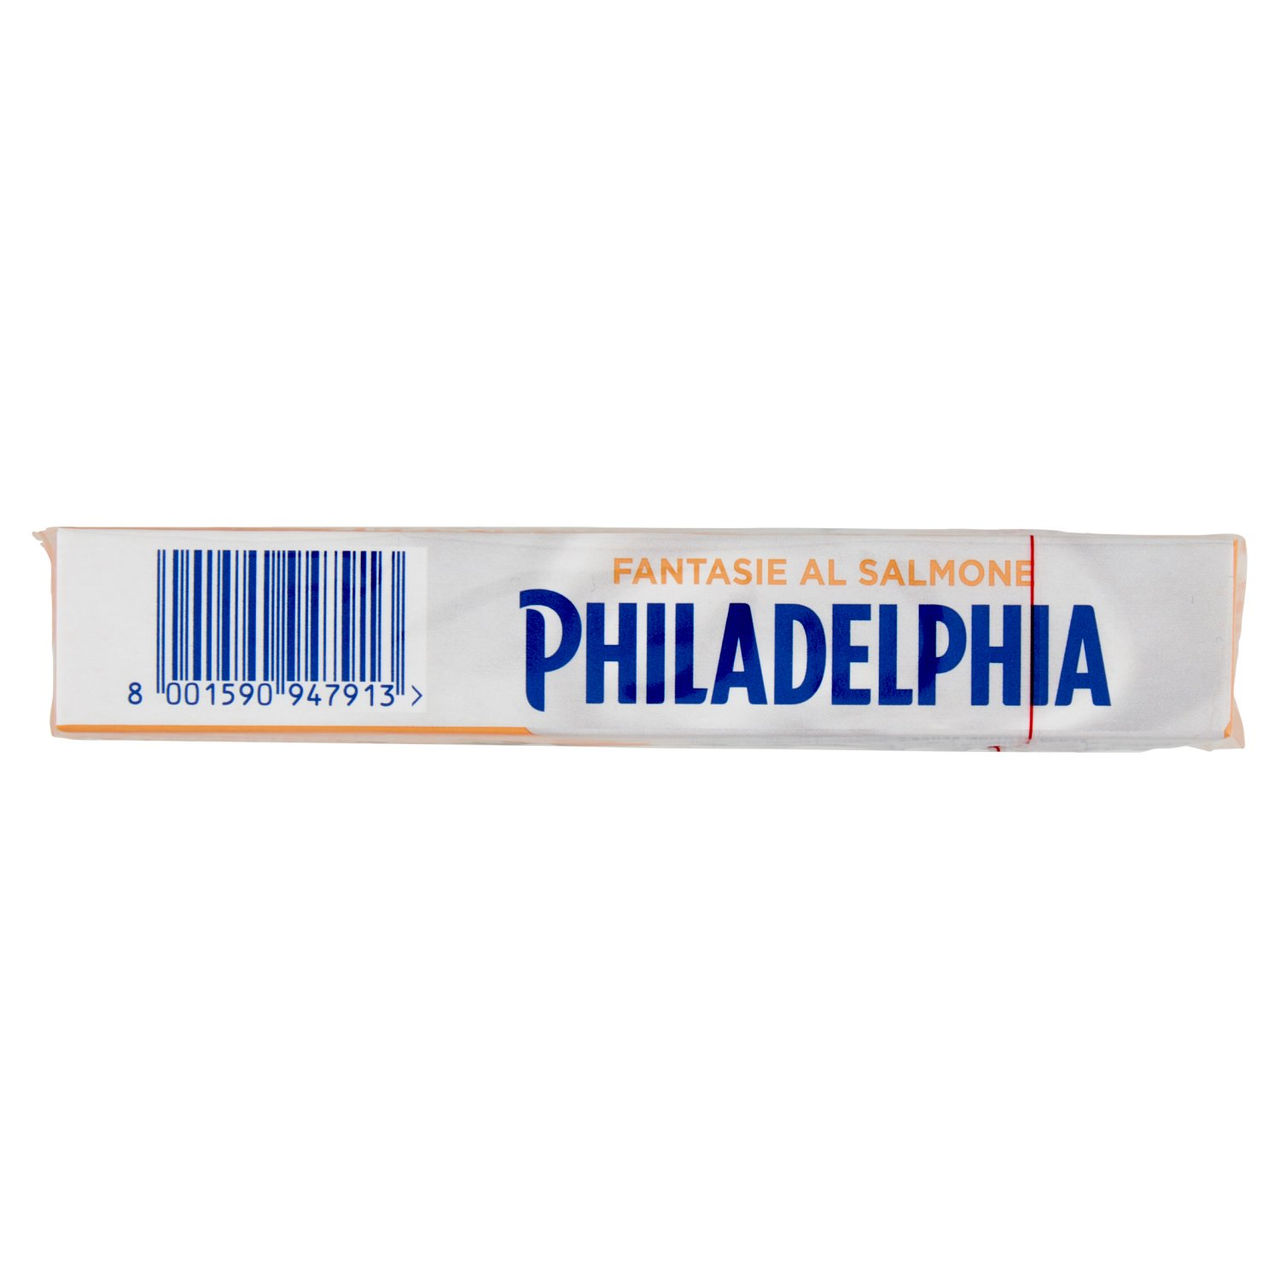 Philadelphia Salmone 6 x 25 g